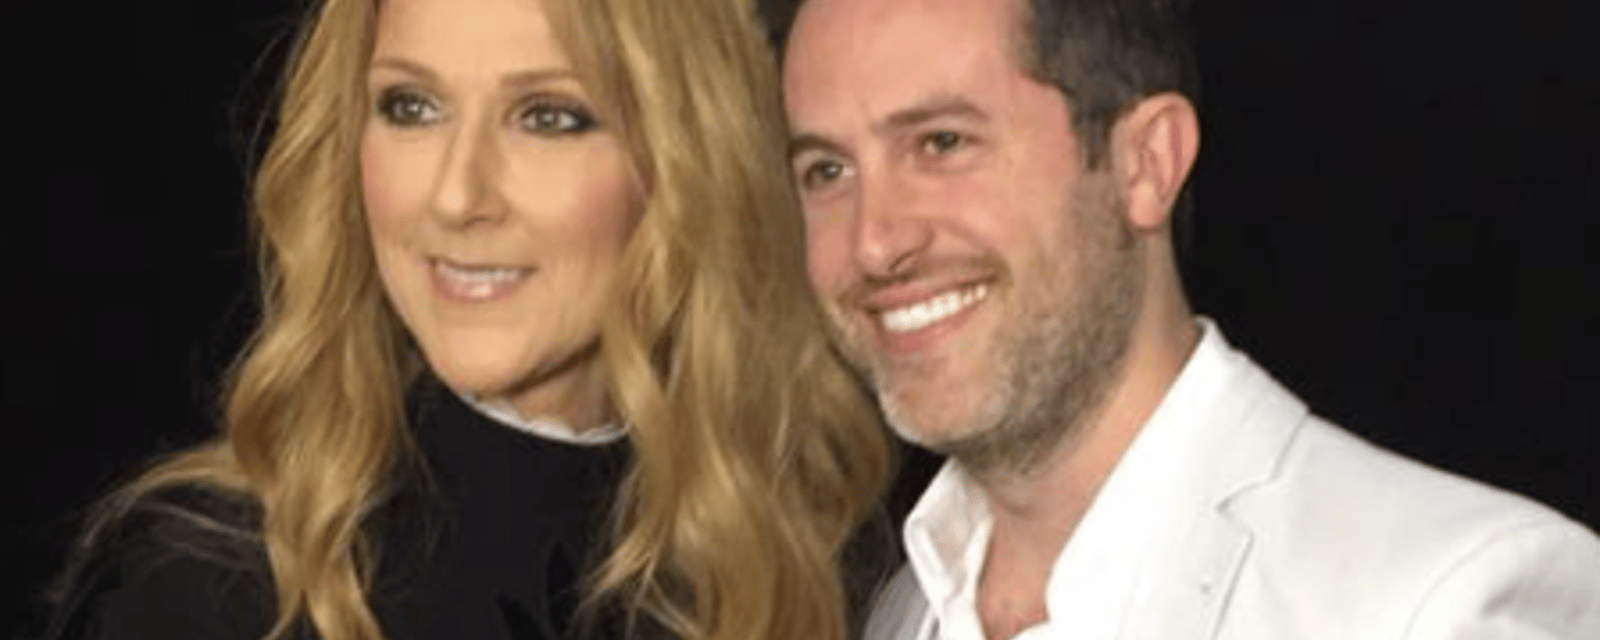 TVA annonce une émission spéciale avec Céline Dion et Jean-Philippe Dion